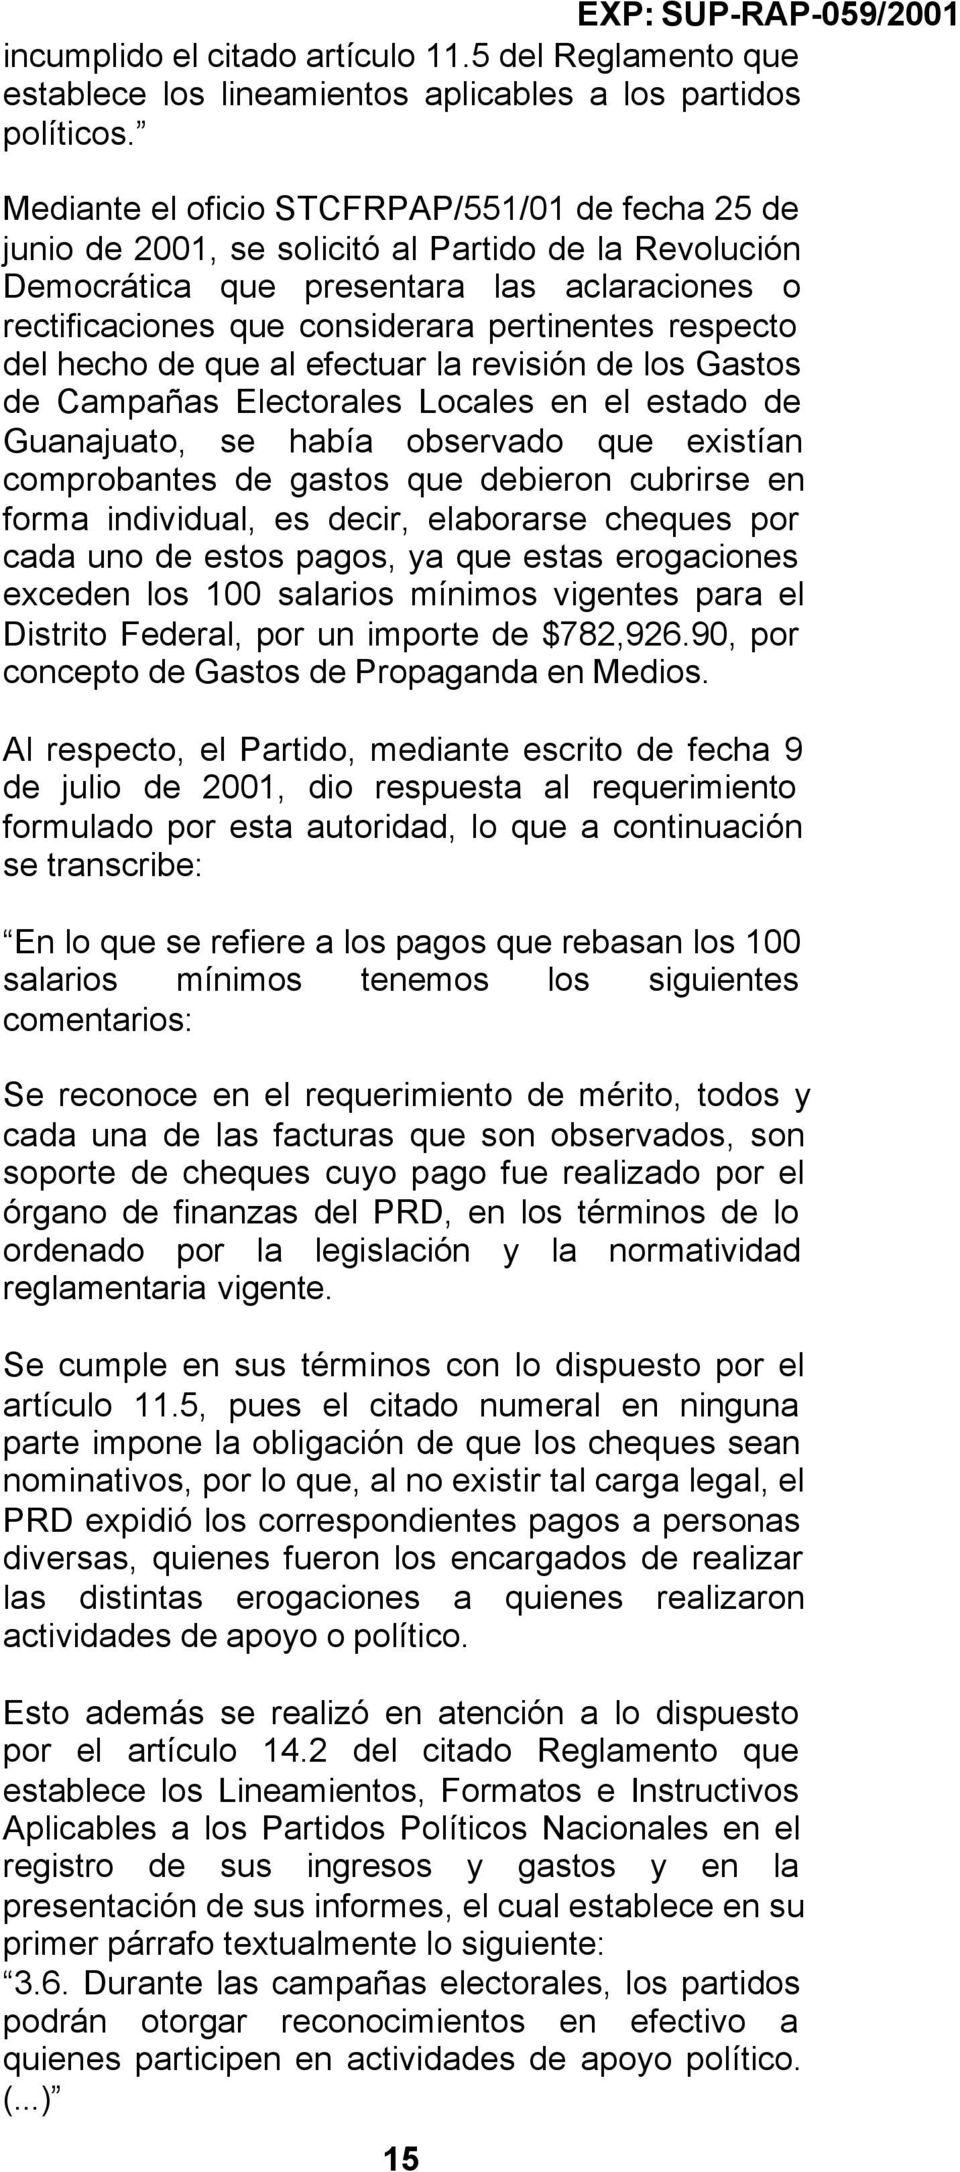 respecto del hecho de que al efectuar la revisión de los Gastos de Campañas Electorales Locales en el estado de Guanajuato, se había observado que existían comprobantes de gastos que debieron